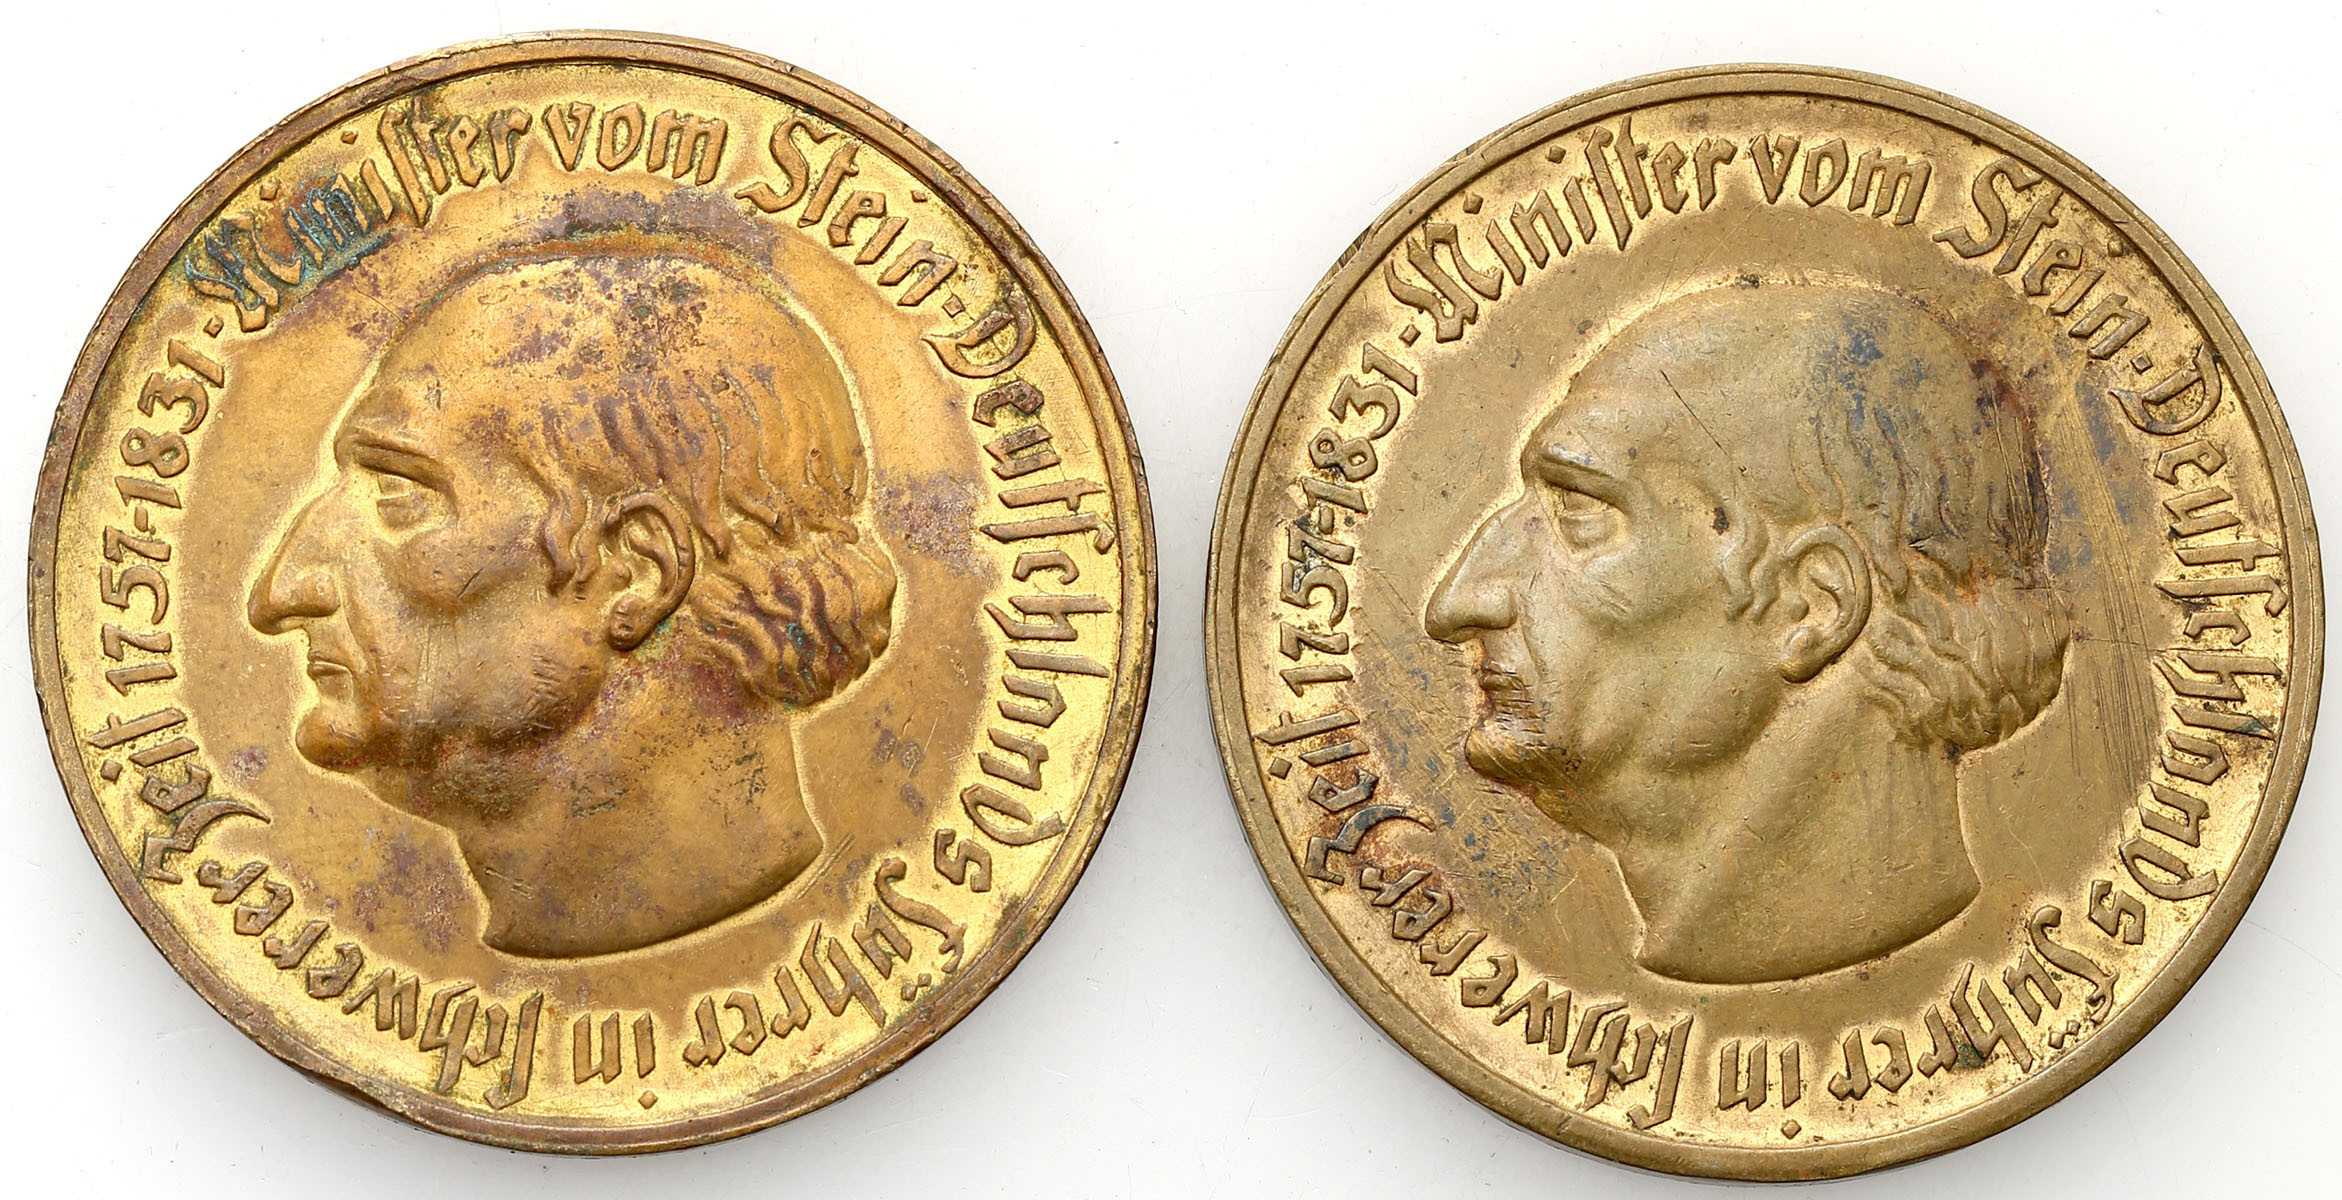 Niemcy, Westfalia, 10.000, 50 milionów marek 1923, zestaw 2 monet